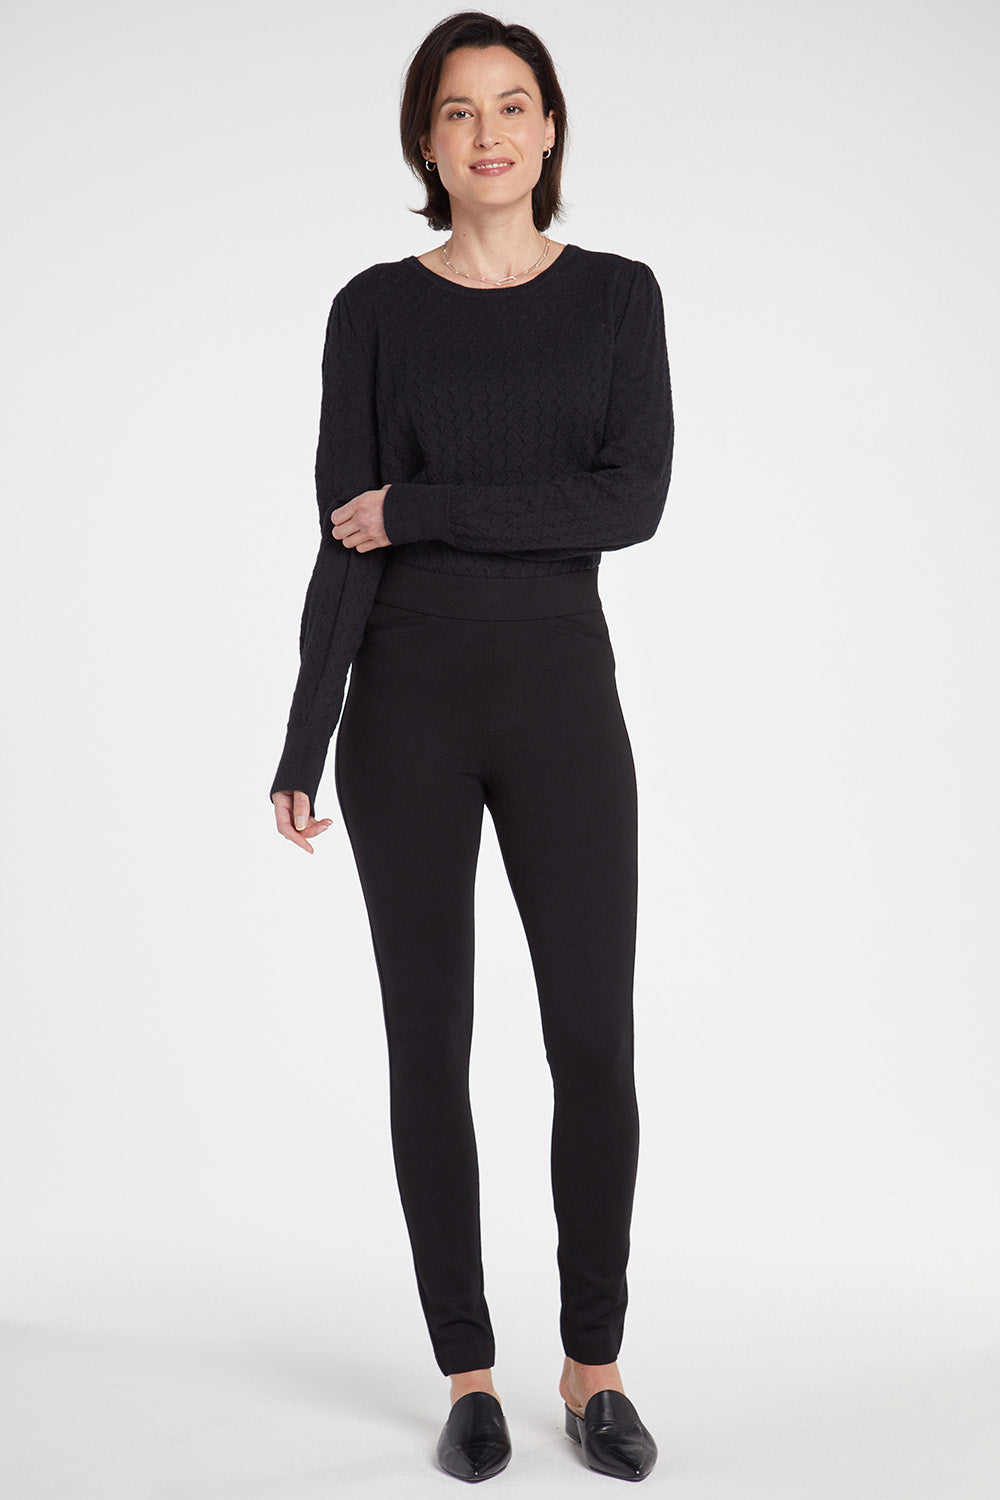 Women's leggings Ypawood - CARBON MELANGE Black - E24